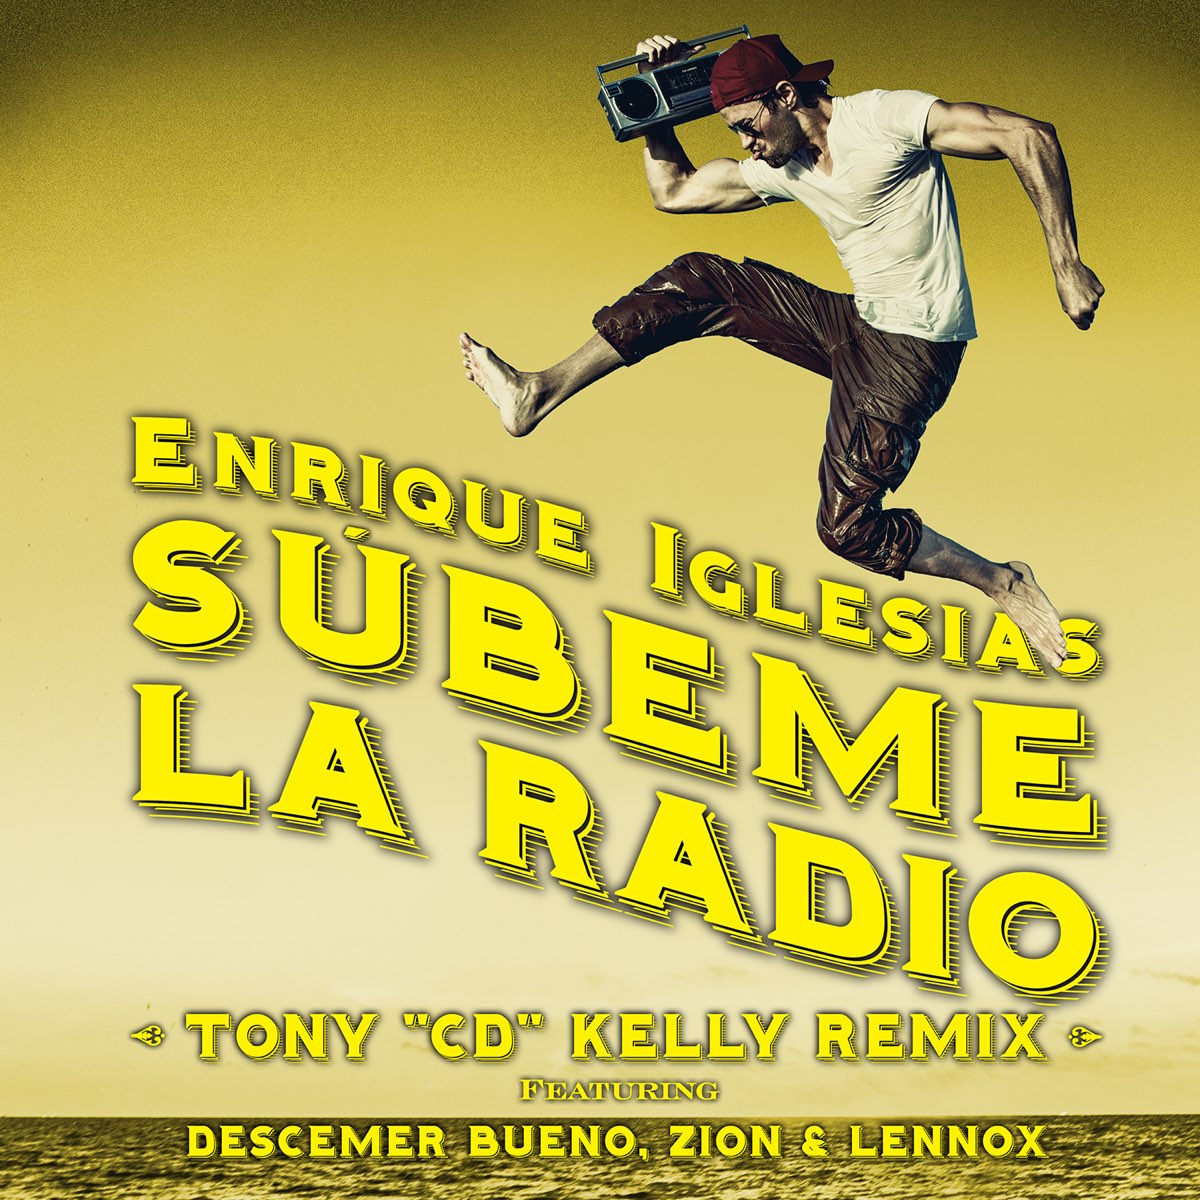 SÚBEME LA RADIO (feat. Descemer Bueno & Zion & Lennox) [Tony "CD" Kelly  Remix] - Single par Enrique Iglesias sur Apple Music